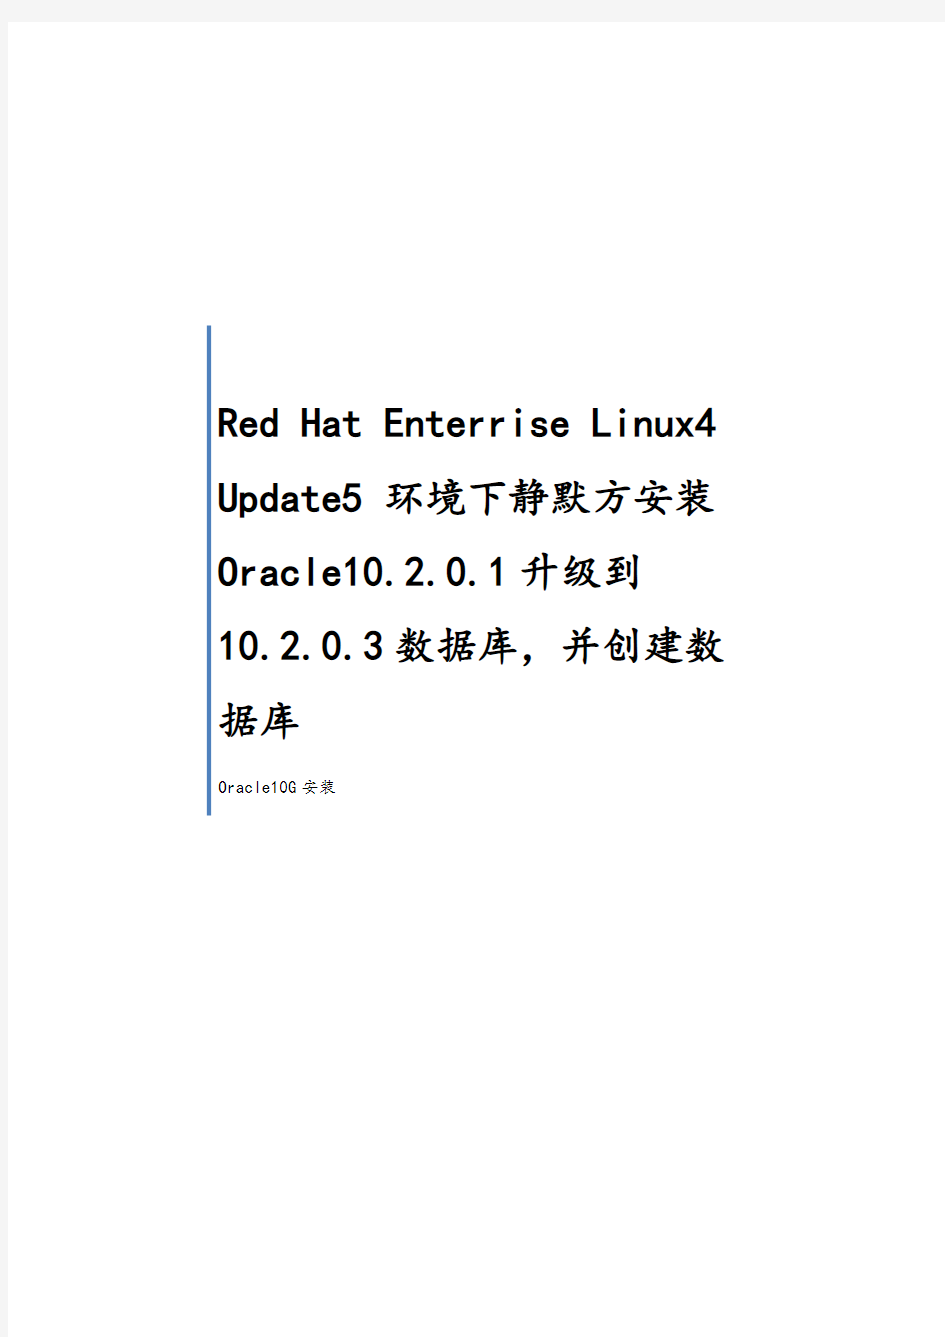 RedHatLinuxAS4Update5静默安装与升级Oracle10G10203